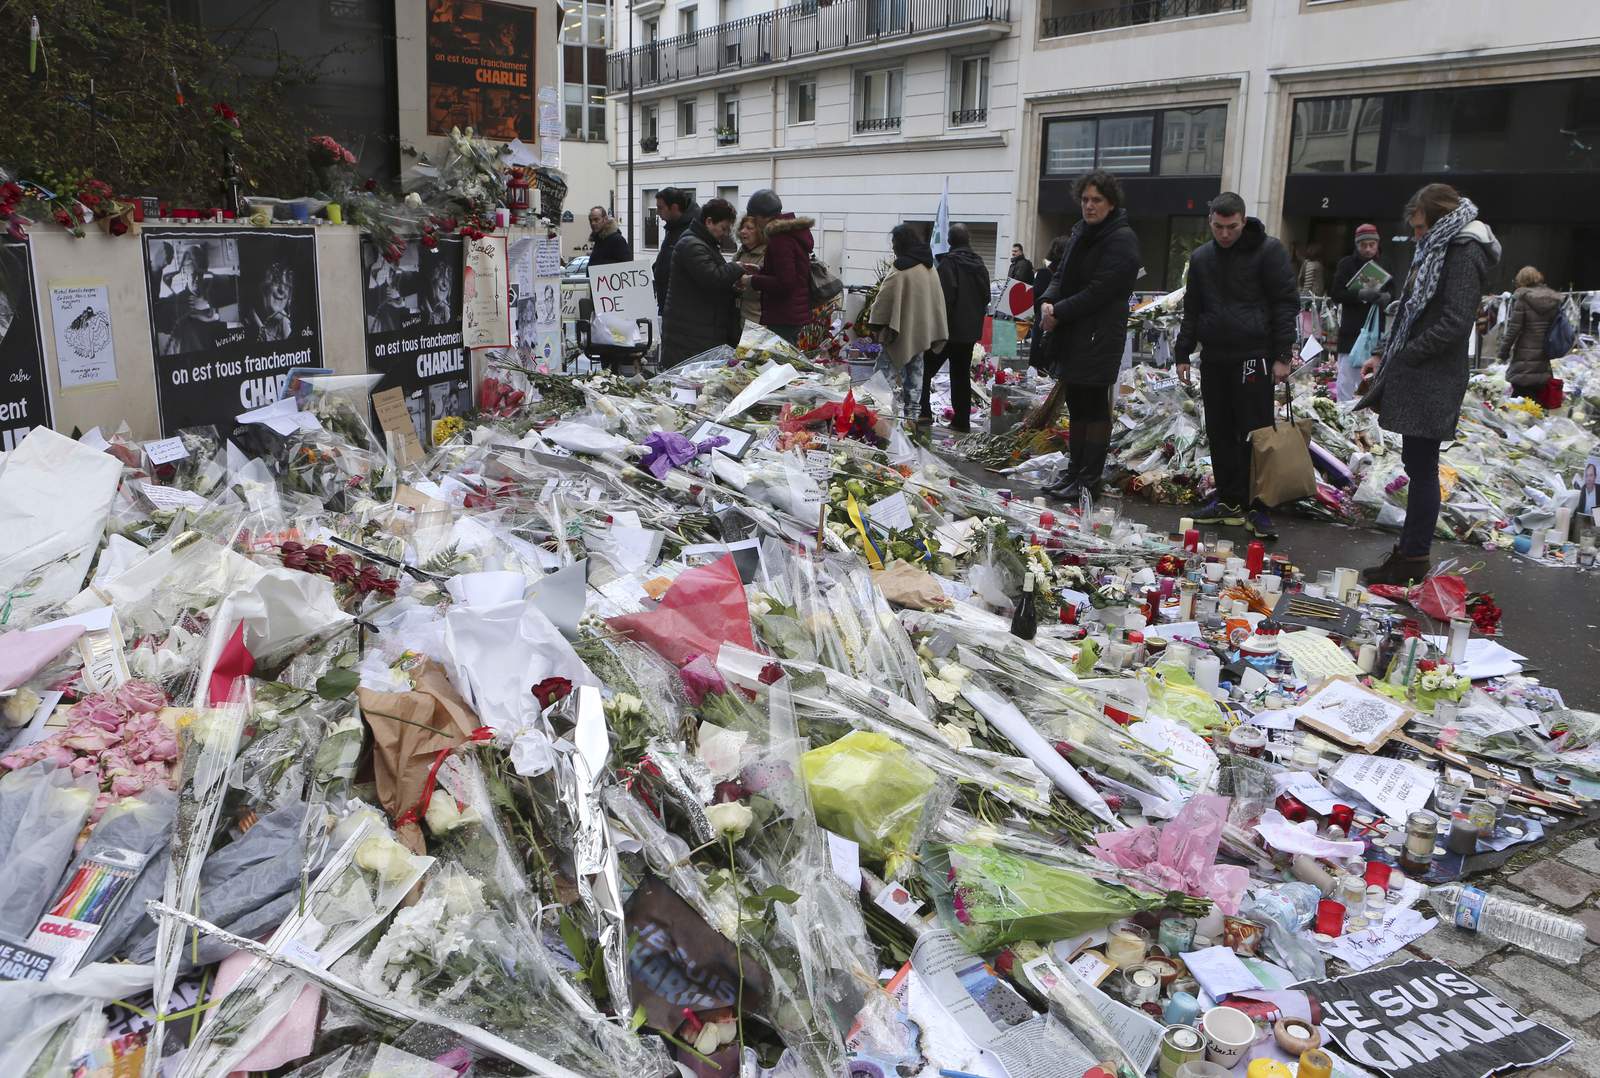 Charlie Hebdo terror attack suspects go on trial in Paris